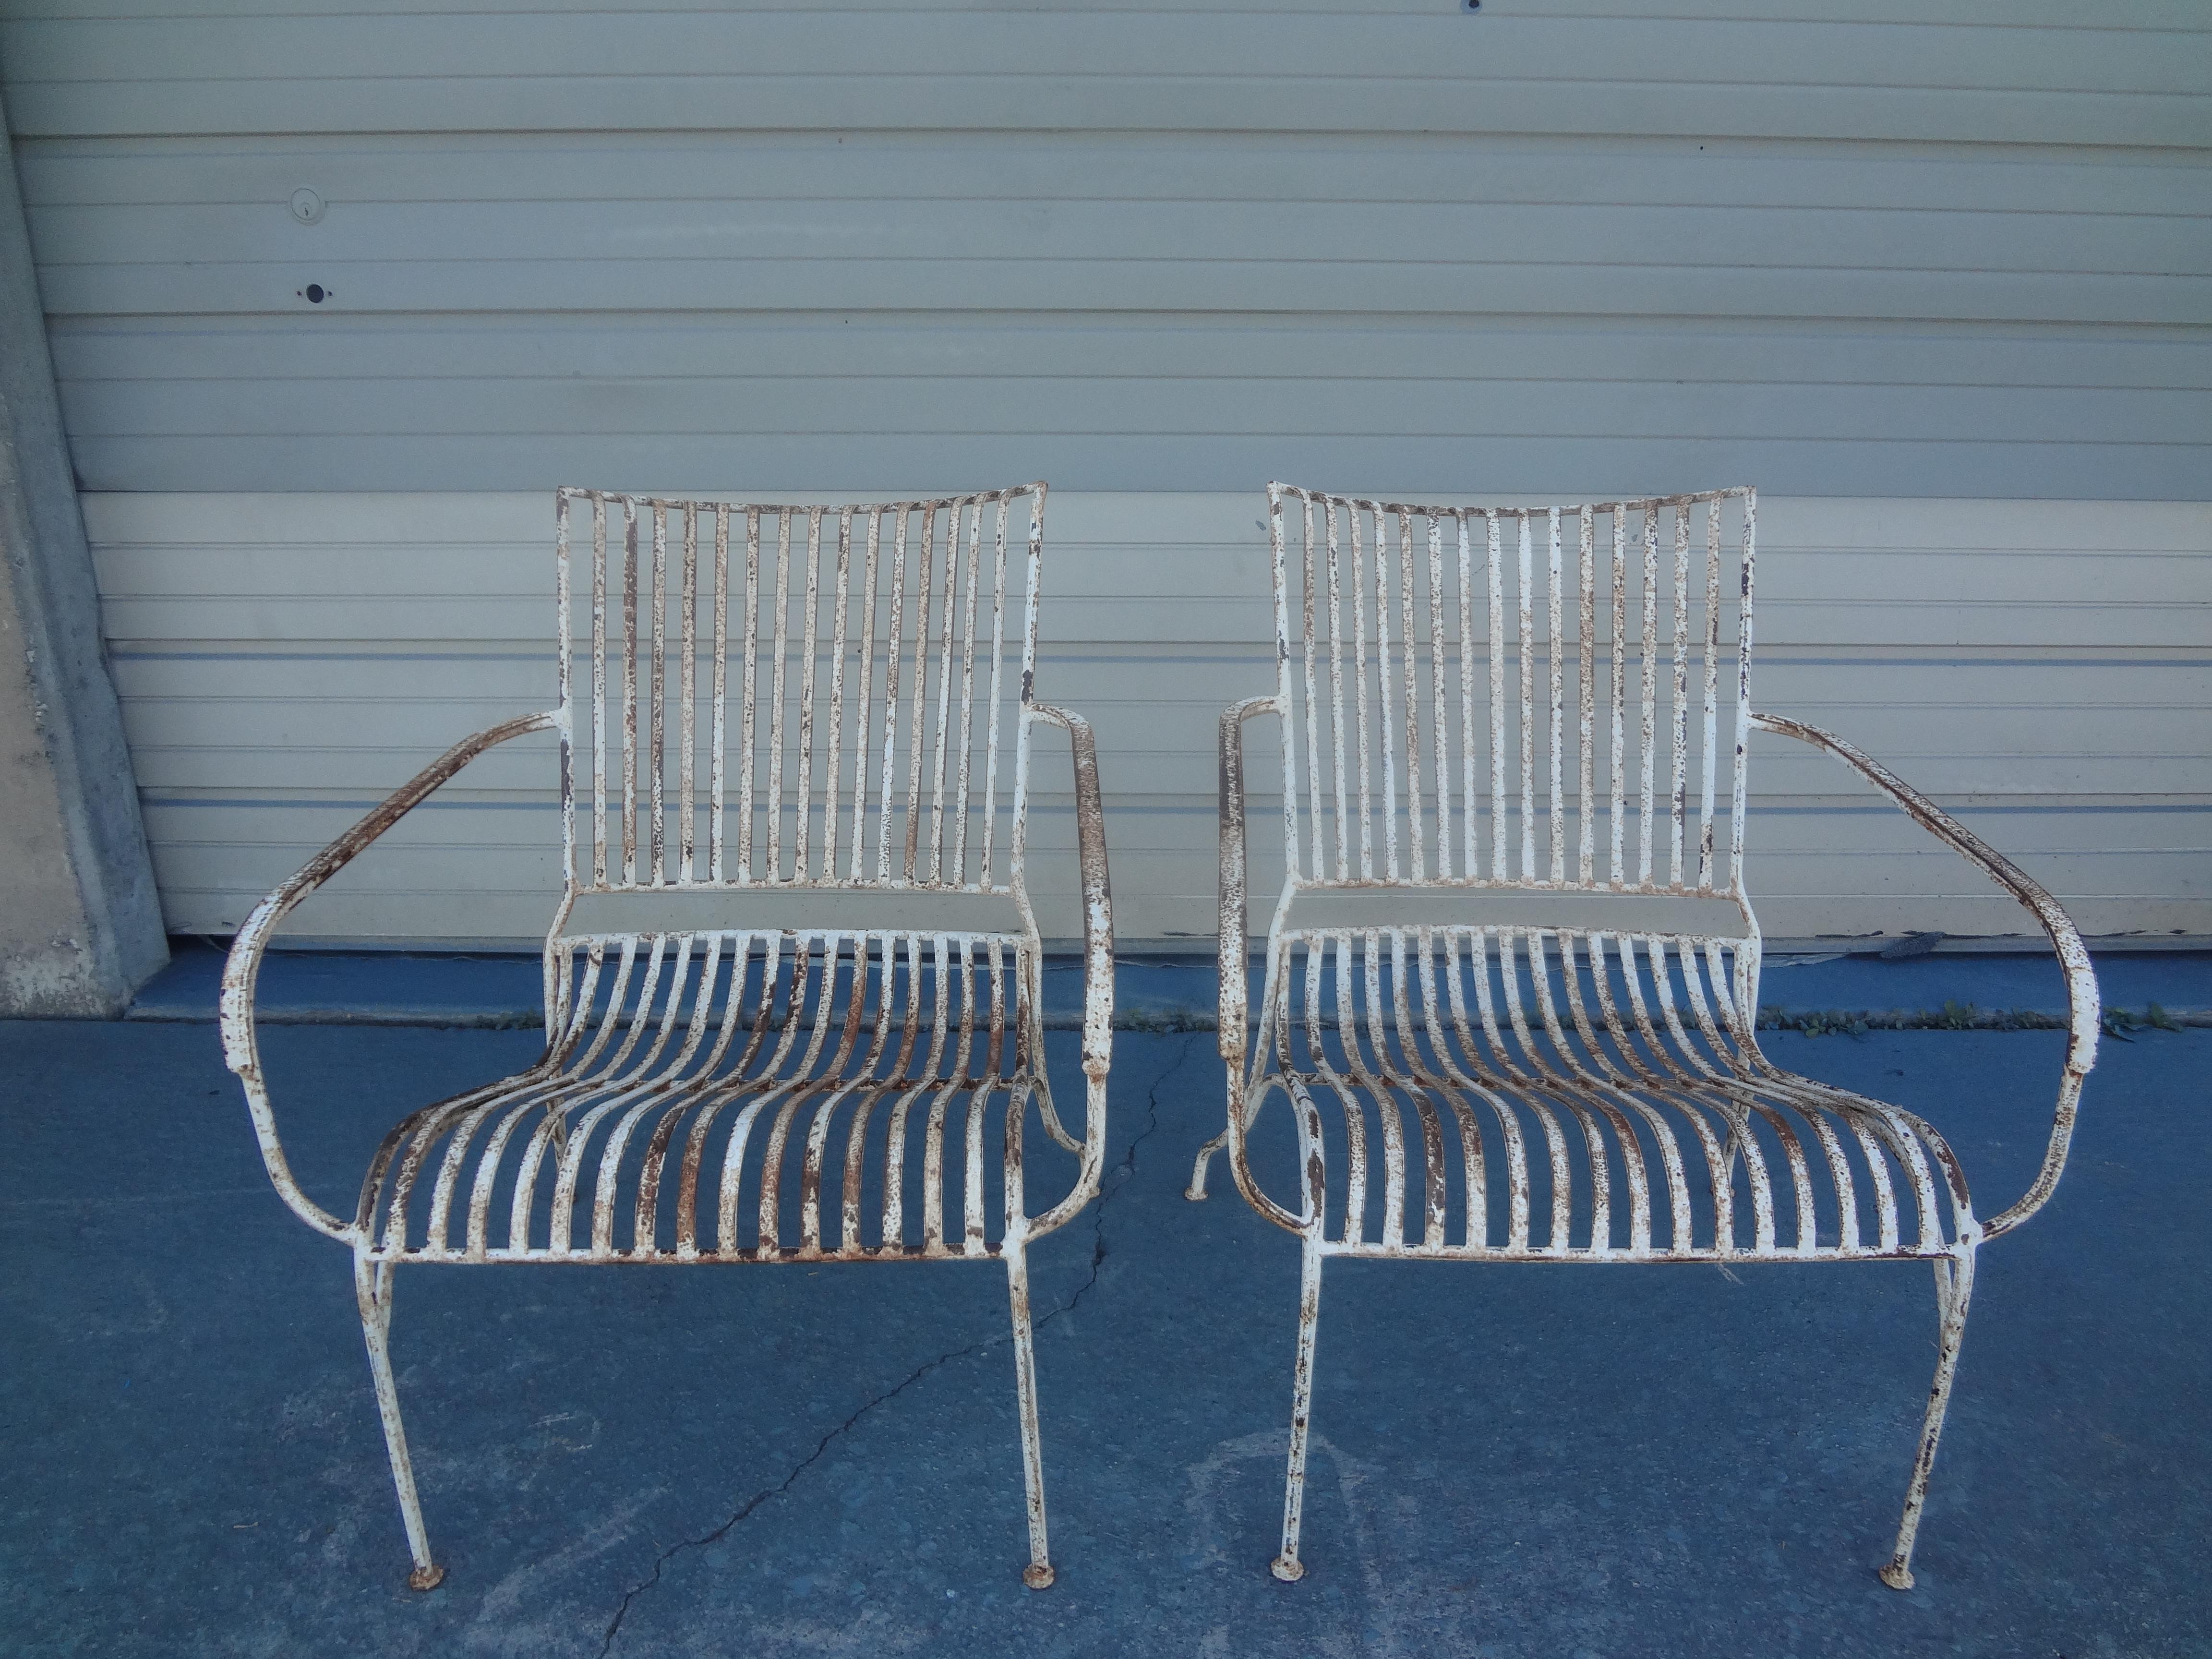 Pair of French Wrought Iron Garden Chairs.
Diese stilvollen und formschönen französischen Gartenstühle aus Eisen sind aus jedem Blickwinkel atemberaubend und äußerst bequem. Hervorragend geeignet für den Einsatz im Freien oder in einem Gartenzimmer